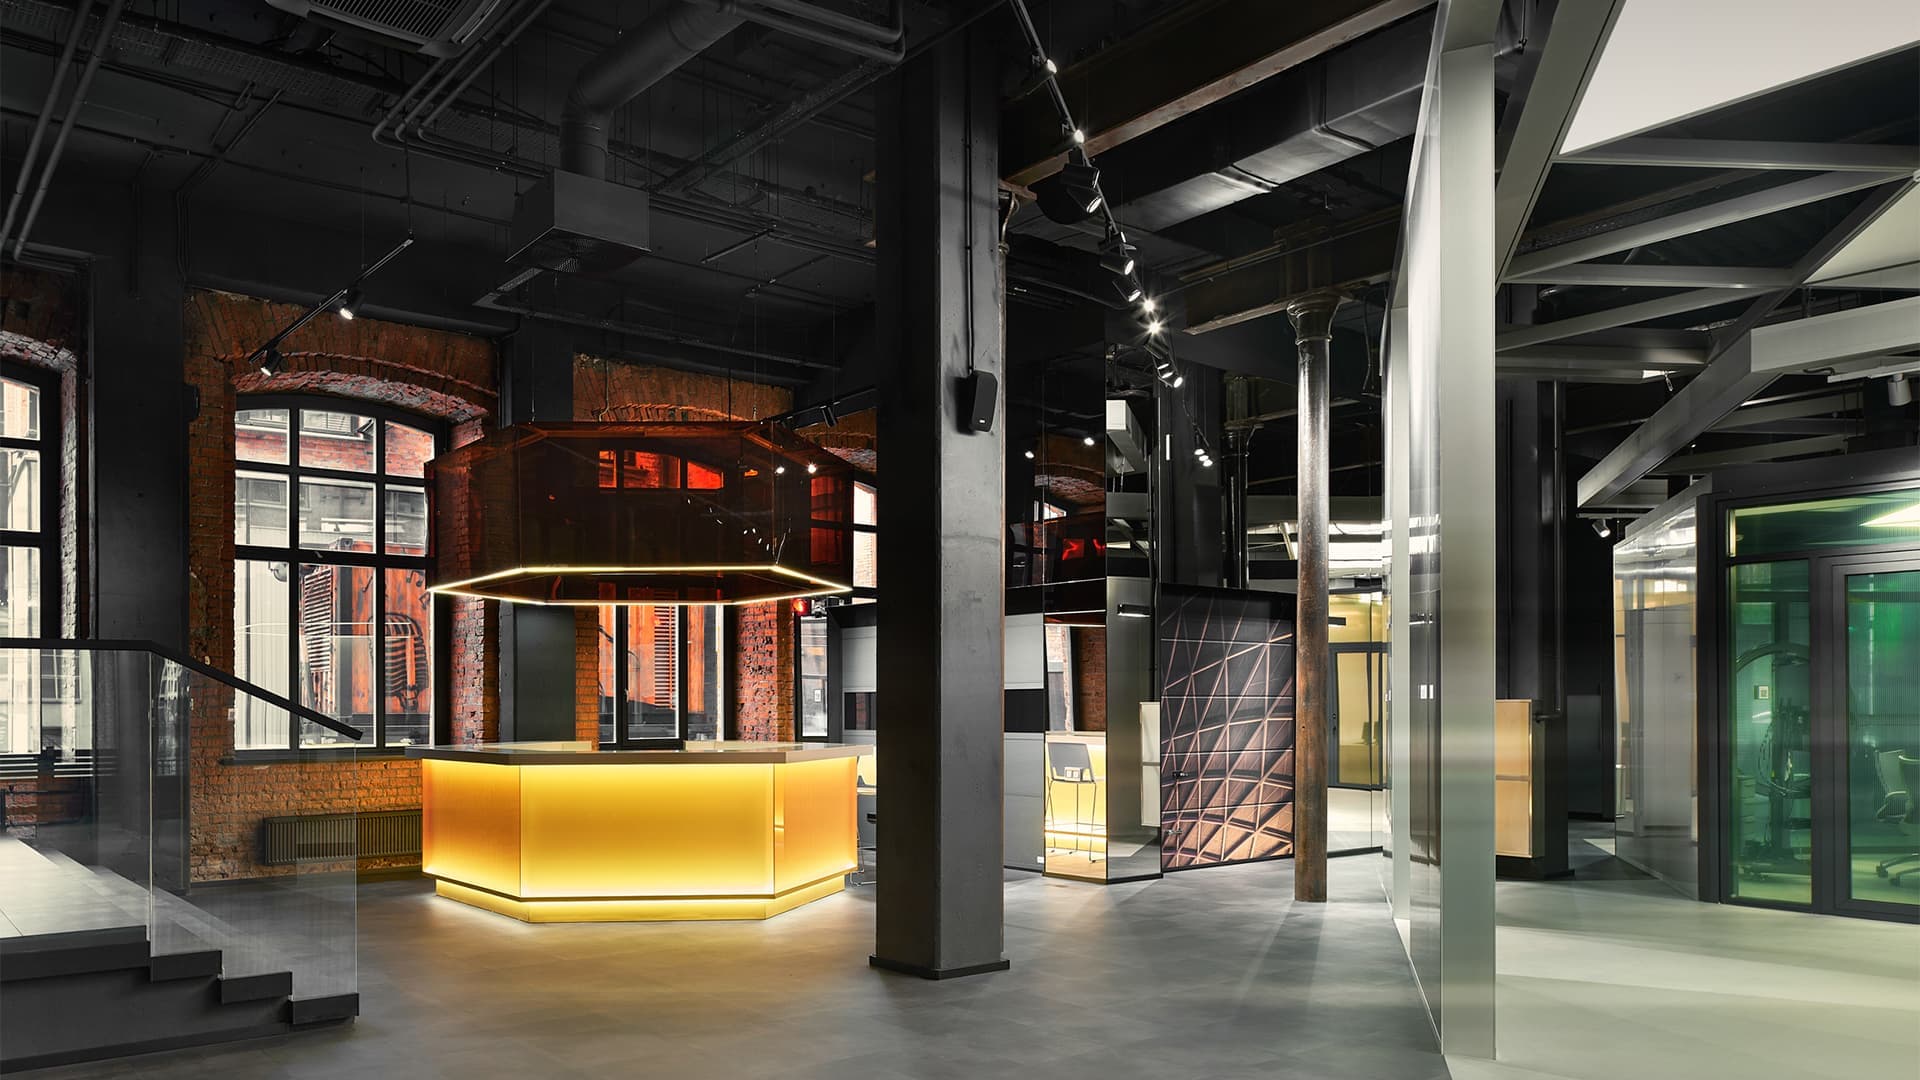 Строгая геометрия, стекло и алюминиевые детали в интерьере современного офиса — проект студии VOX Architects